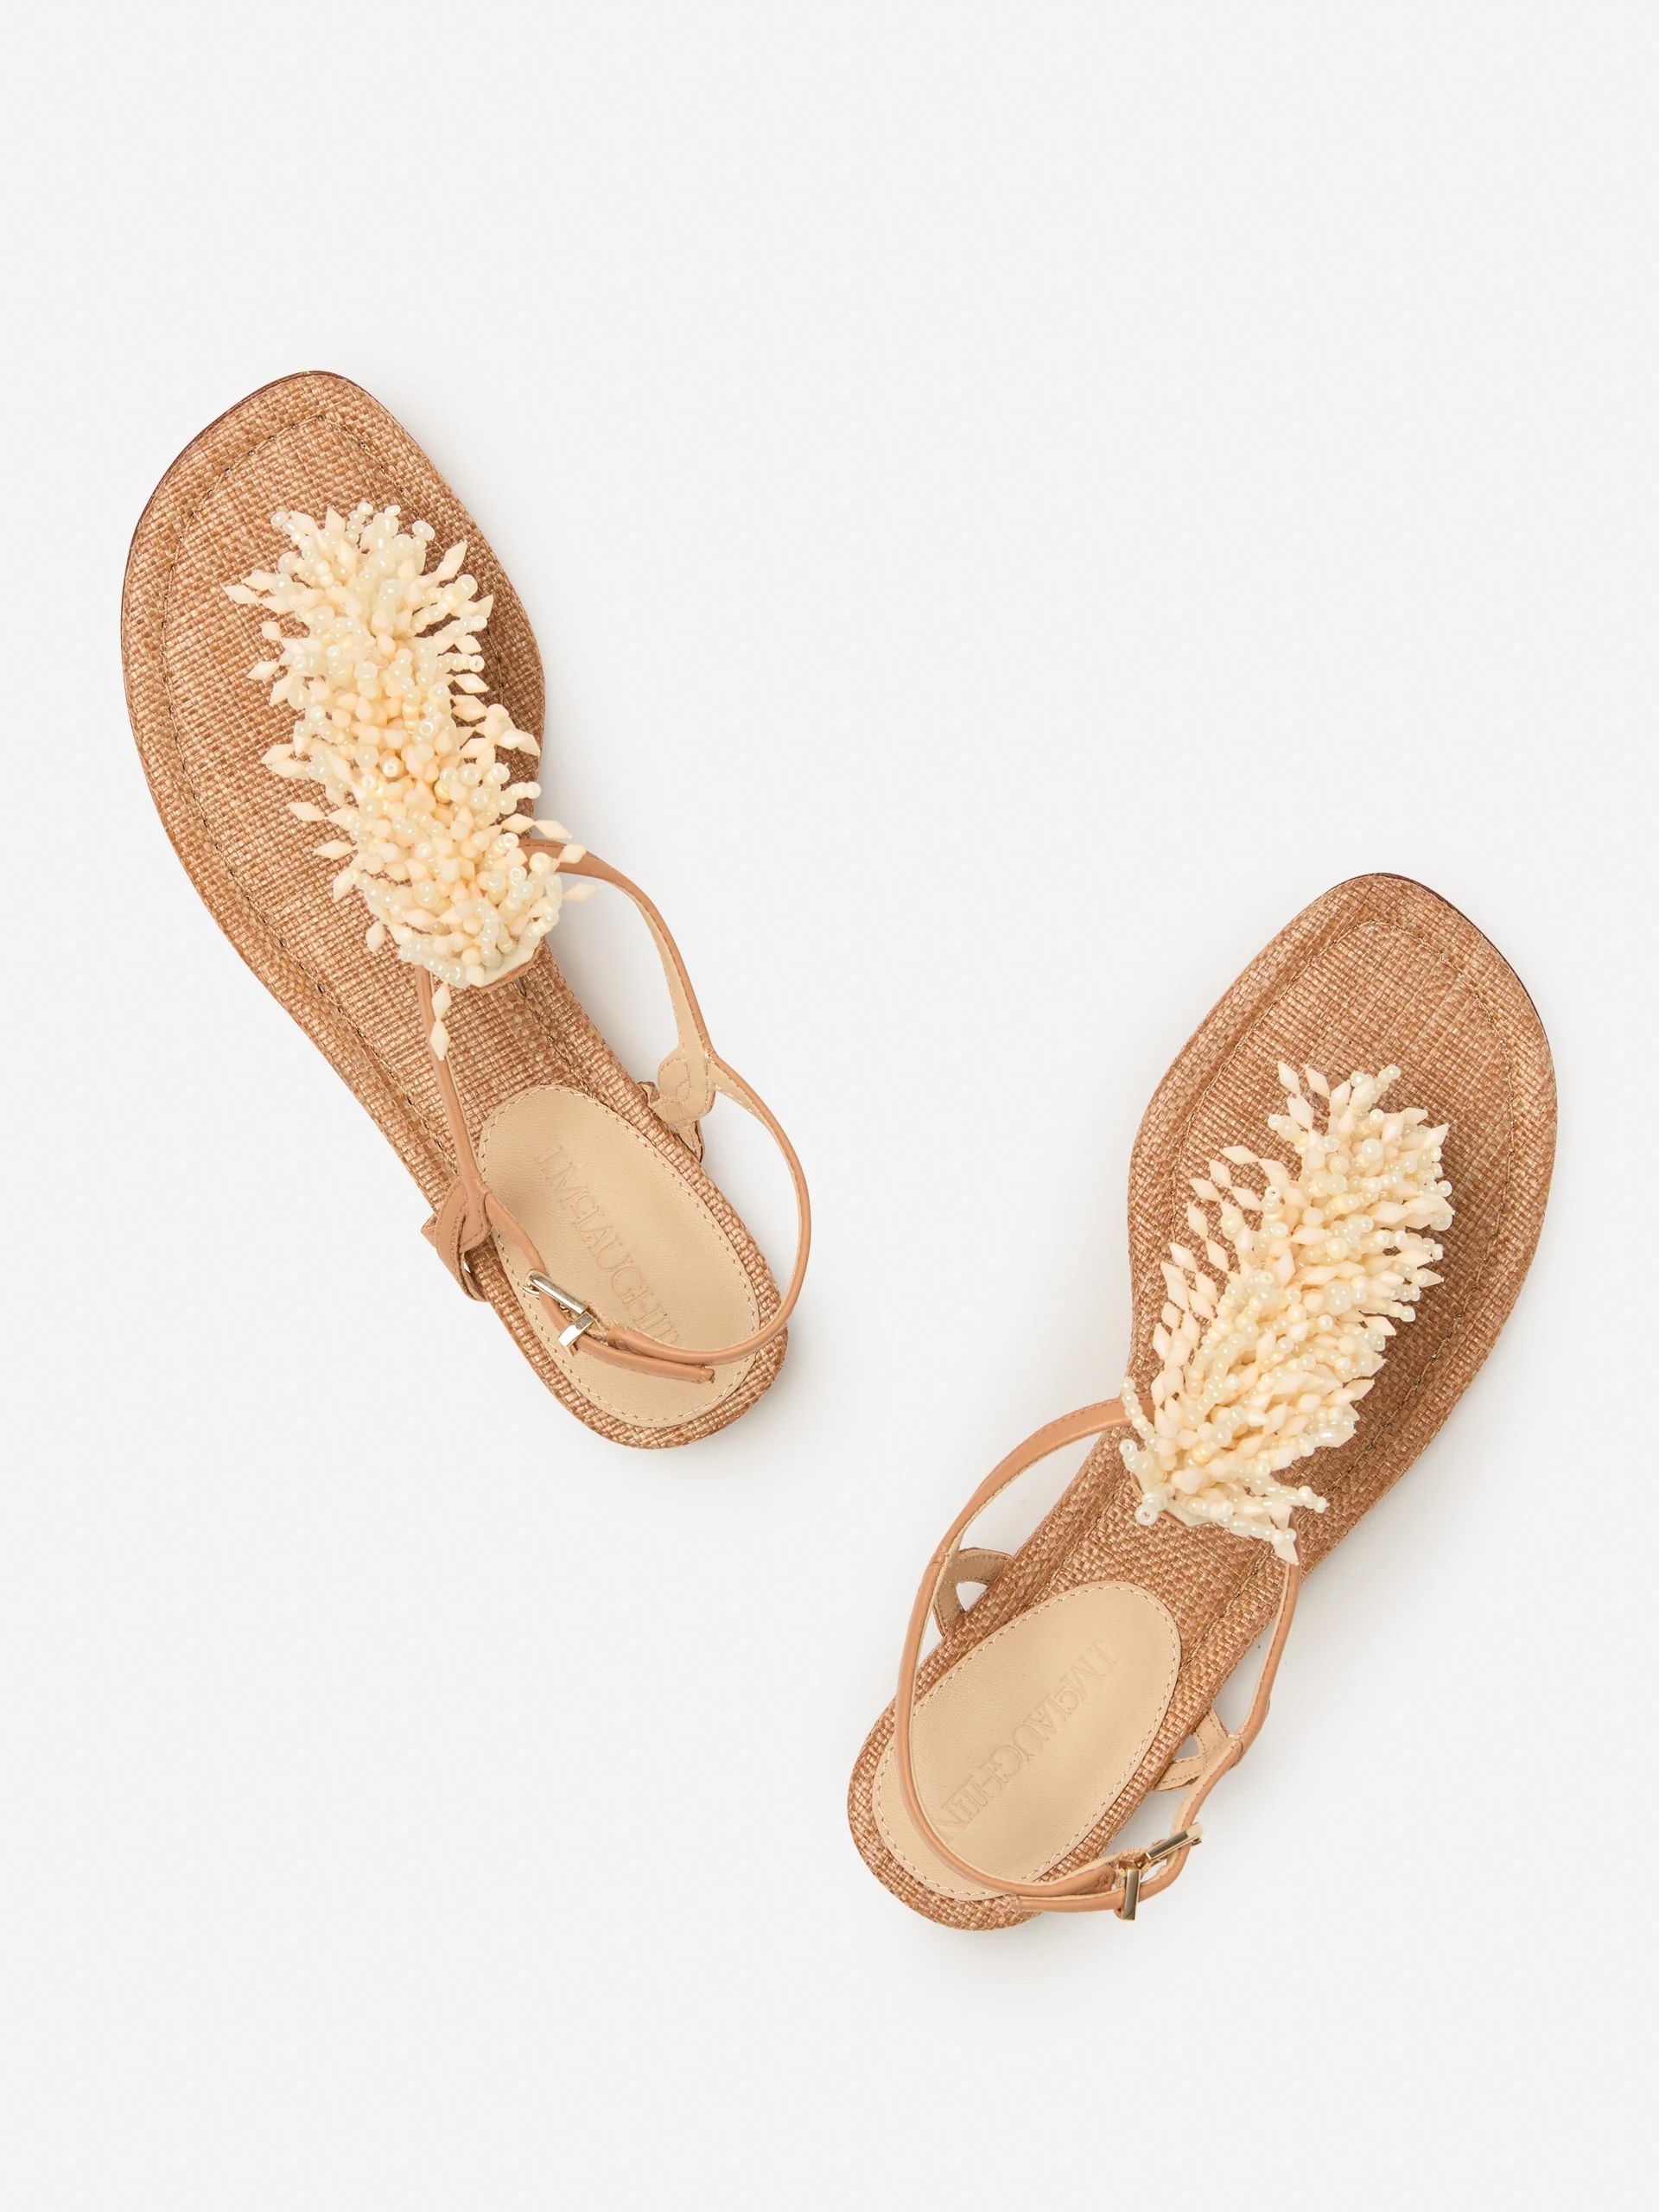 Cream Solid Nevis Sandals | Women's Shoes | J.McLaughlin | J.McLaughlin